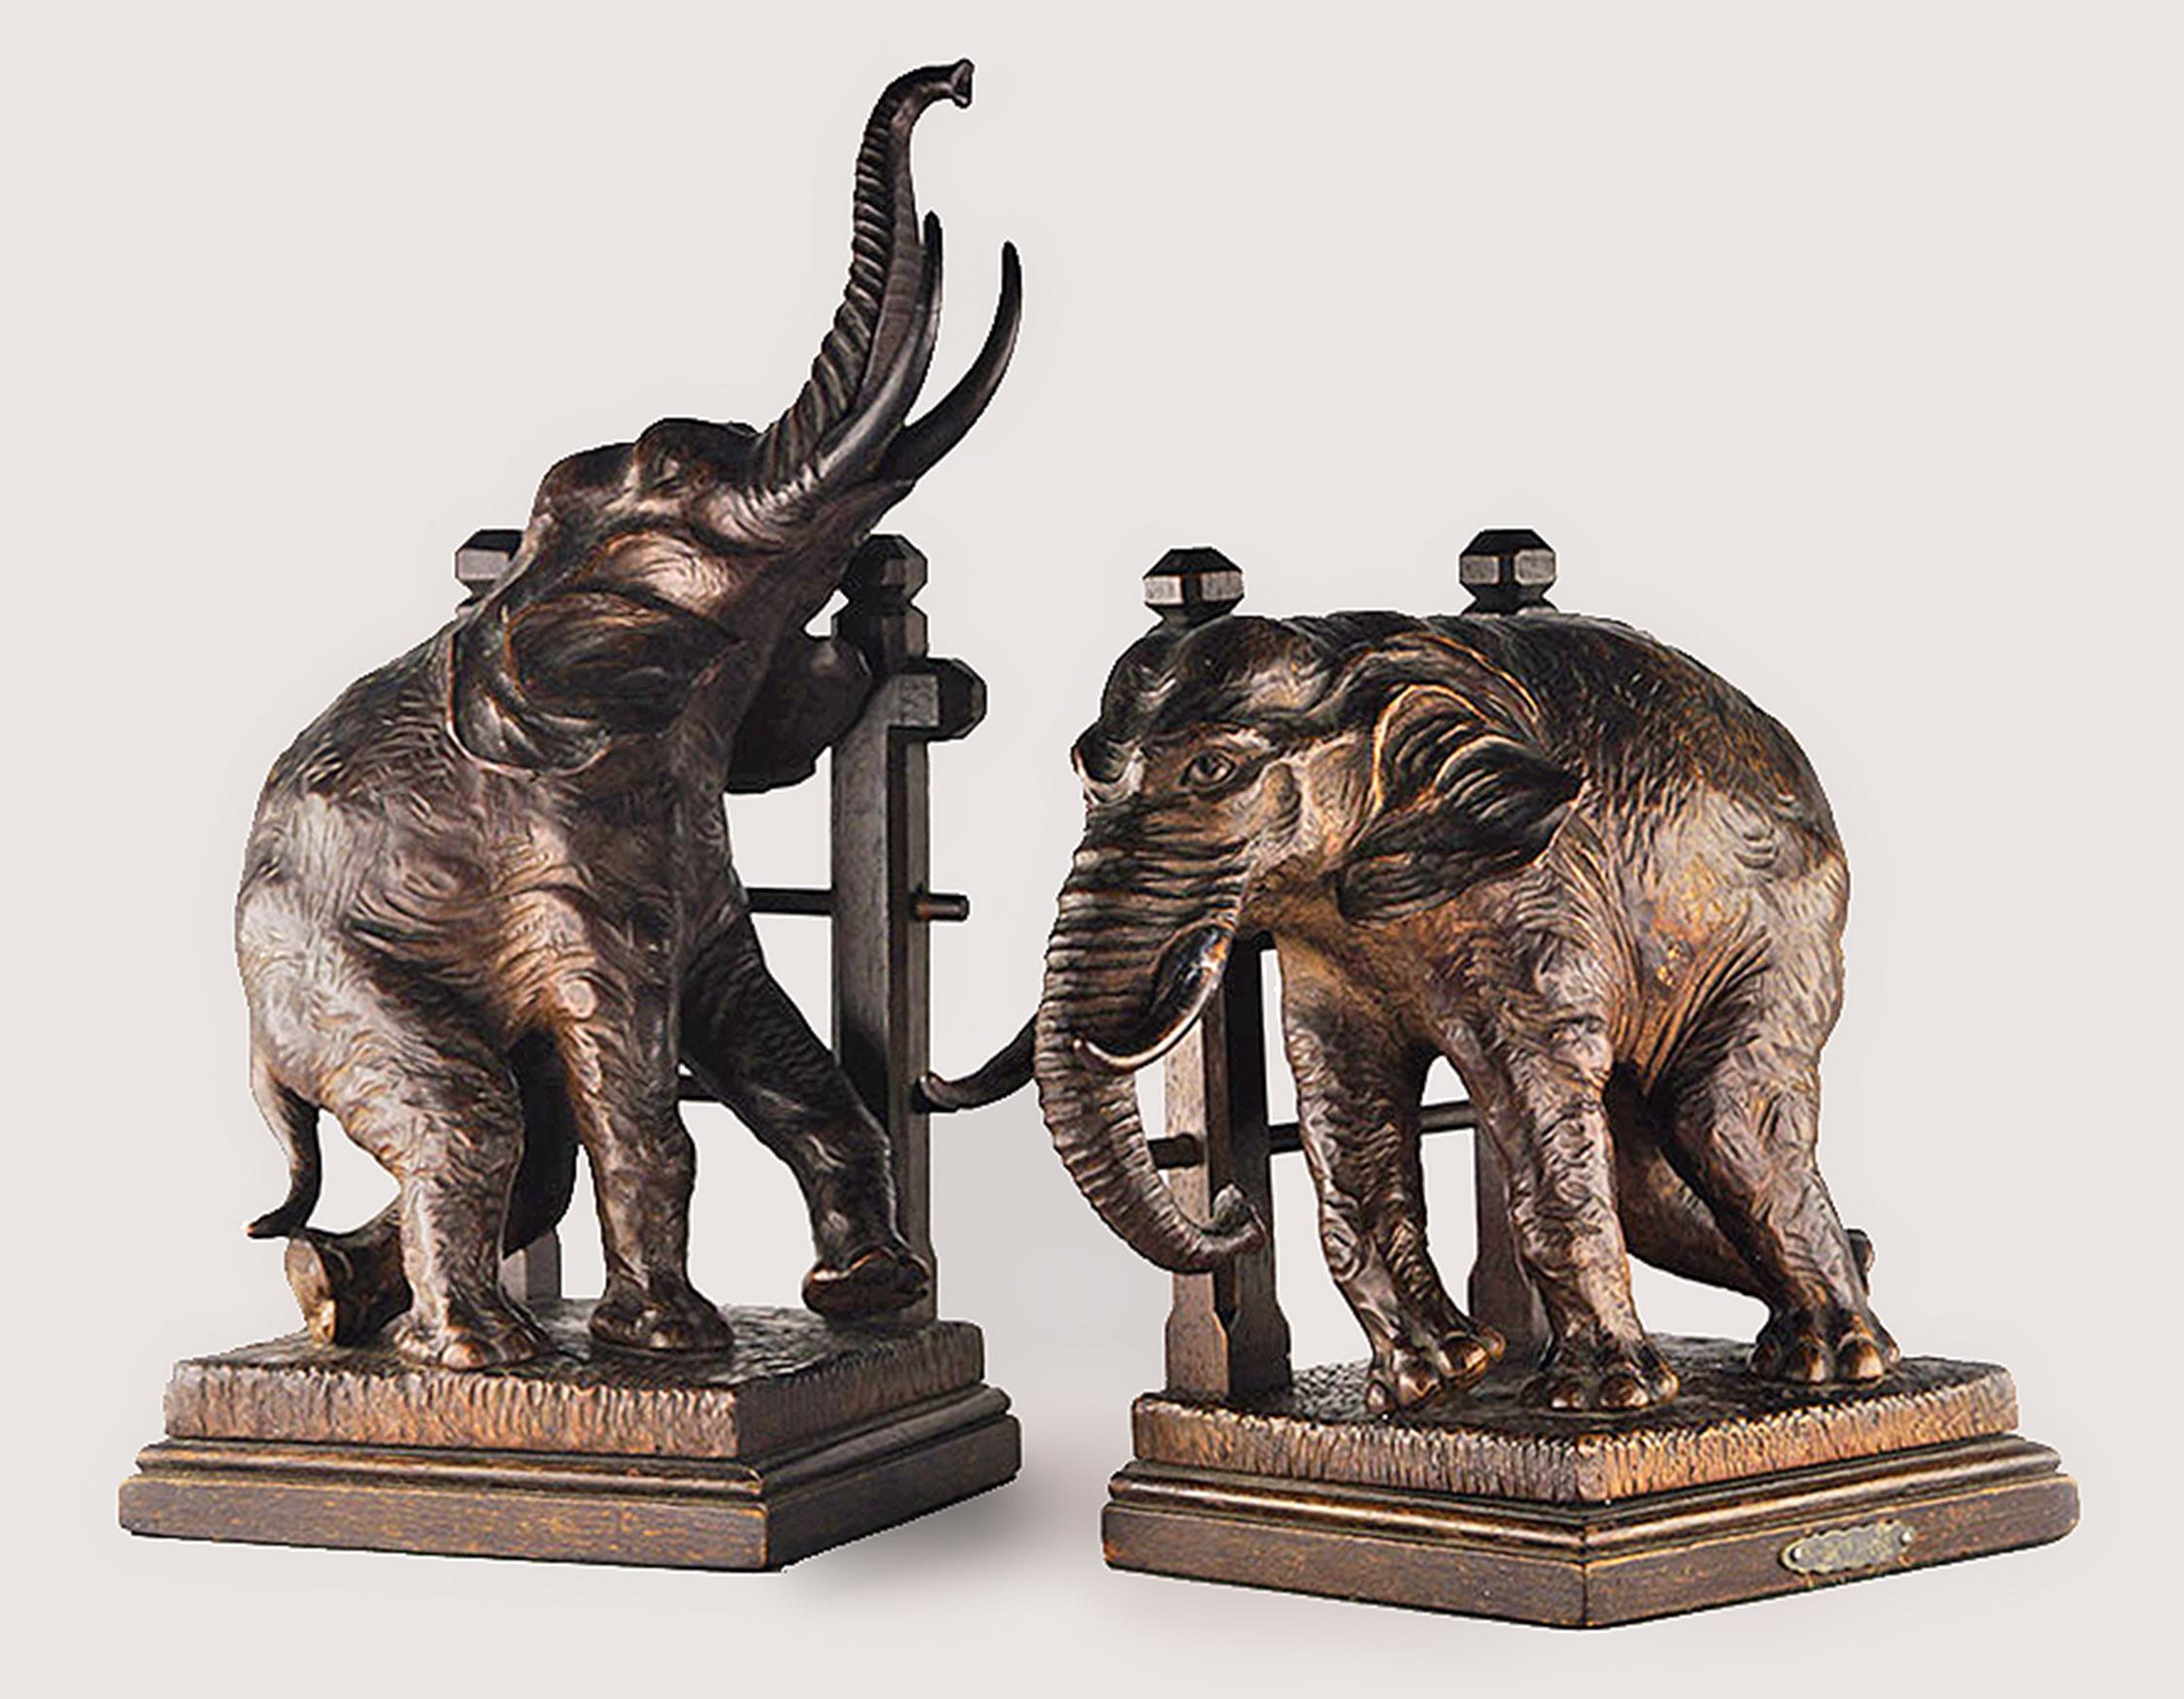 Paire de serre-livres éléphants en bois sculpté du début du 20ème siècle par le sculpteur français Aris Bitter.

Par : Aris
Matériau : bois, métal
Technique : artisanal, sculpté à la main, sculpté, travail du métal
Dimensions : 6 po x 5,5 po x 12